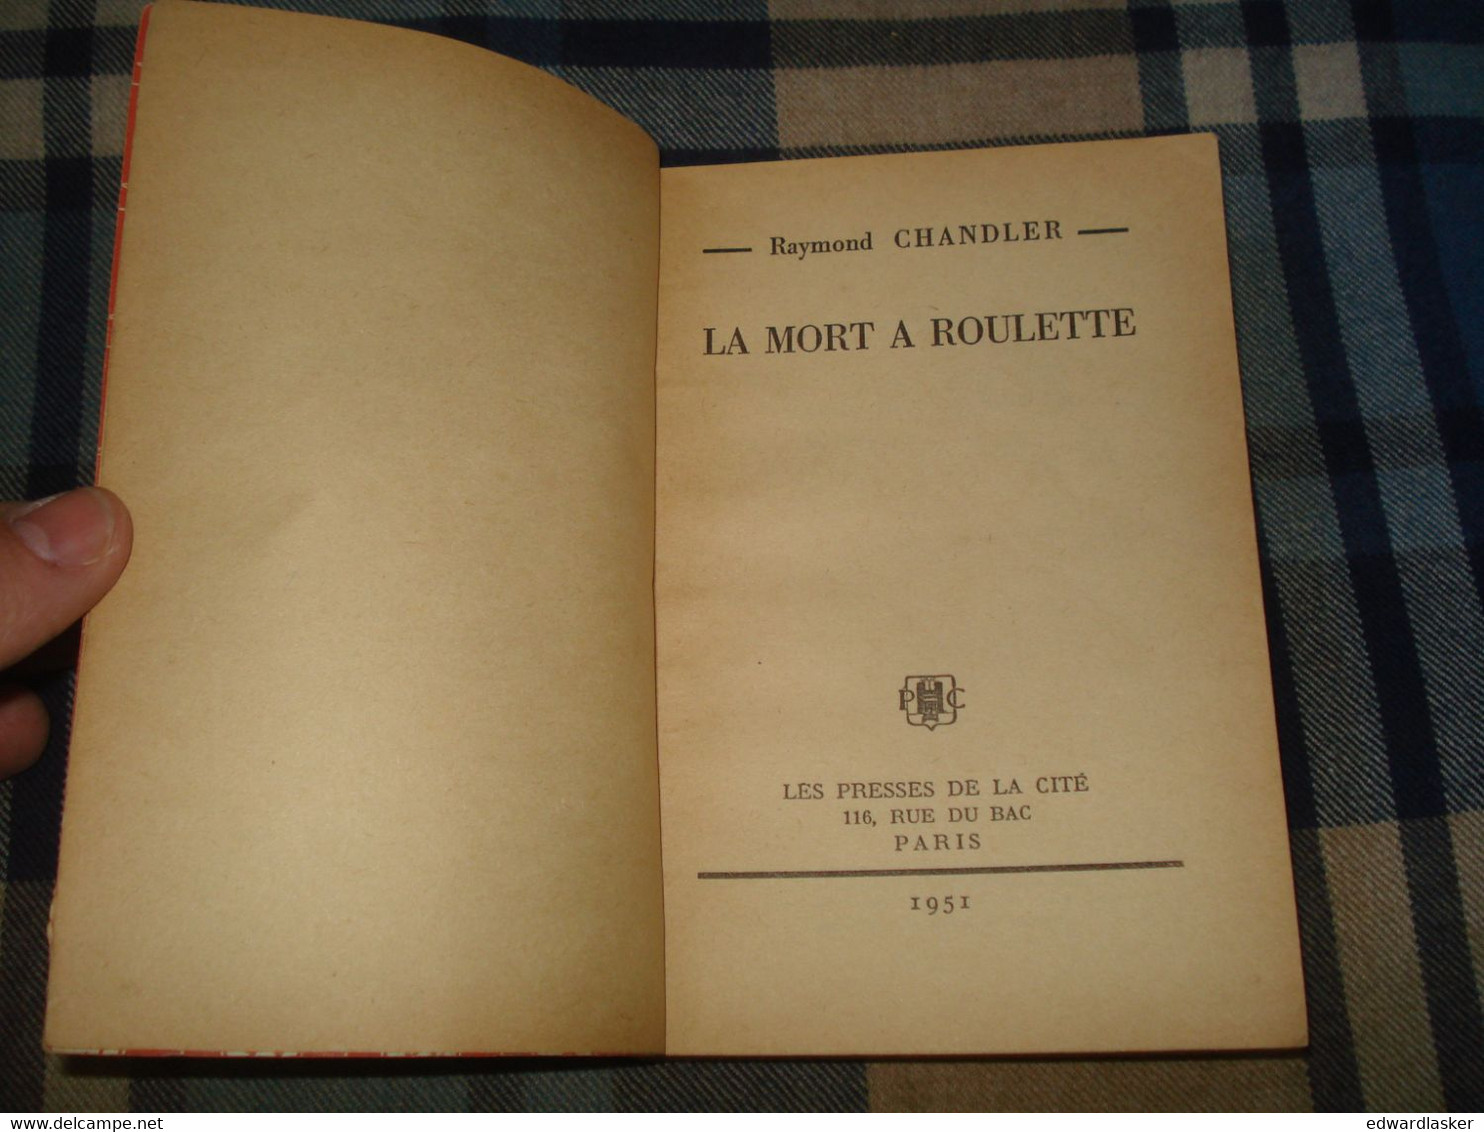 Un MYSTERE N°48 : La MORT à ROULETTE /Raymond CHANDLER - Mars 1951 - Presses De La Cité